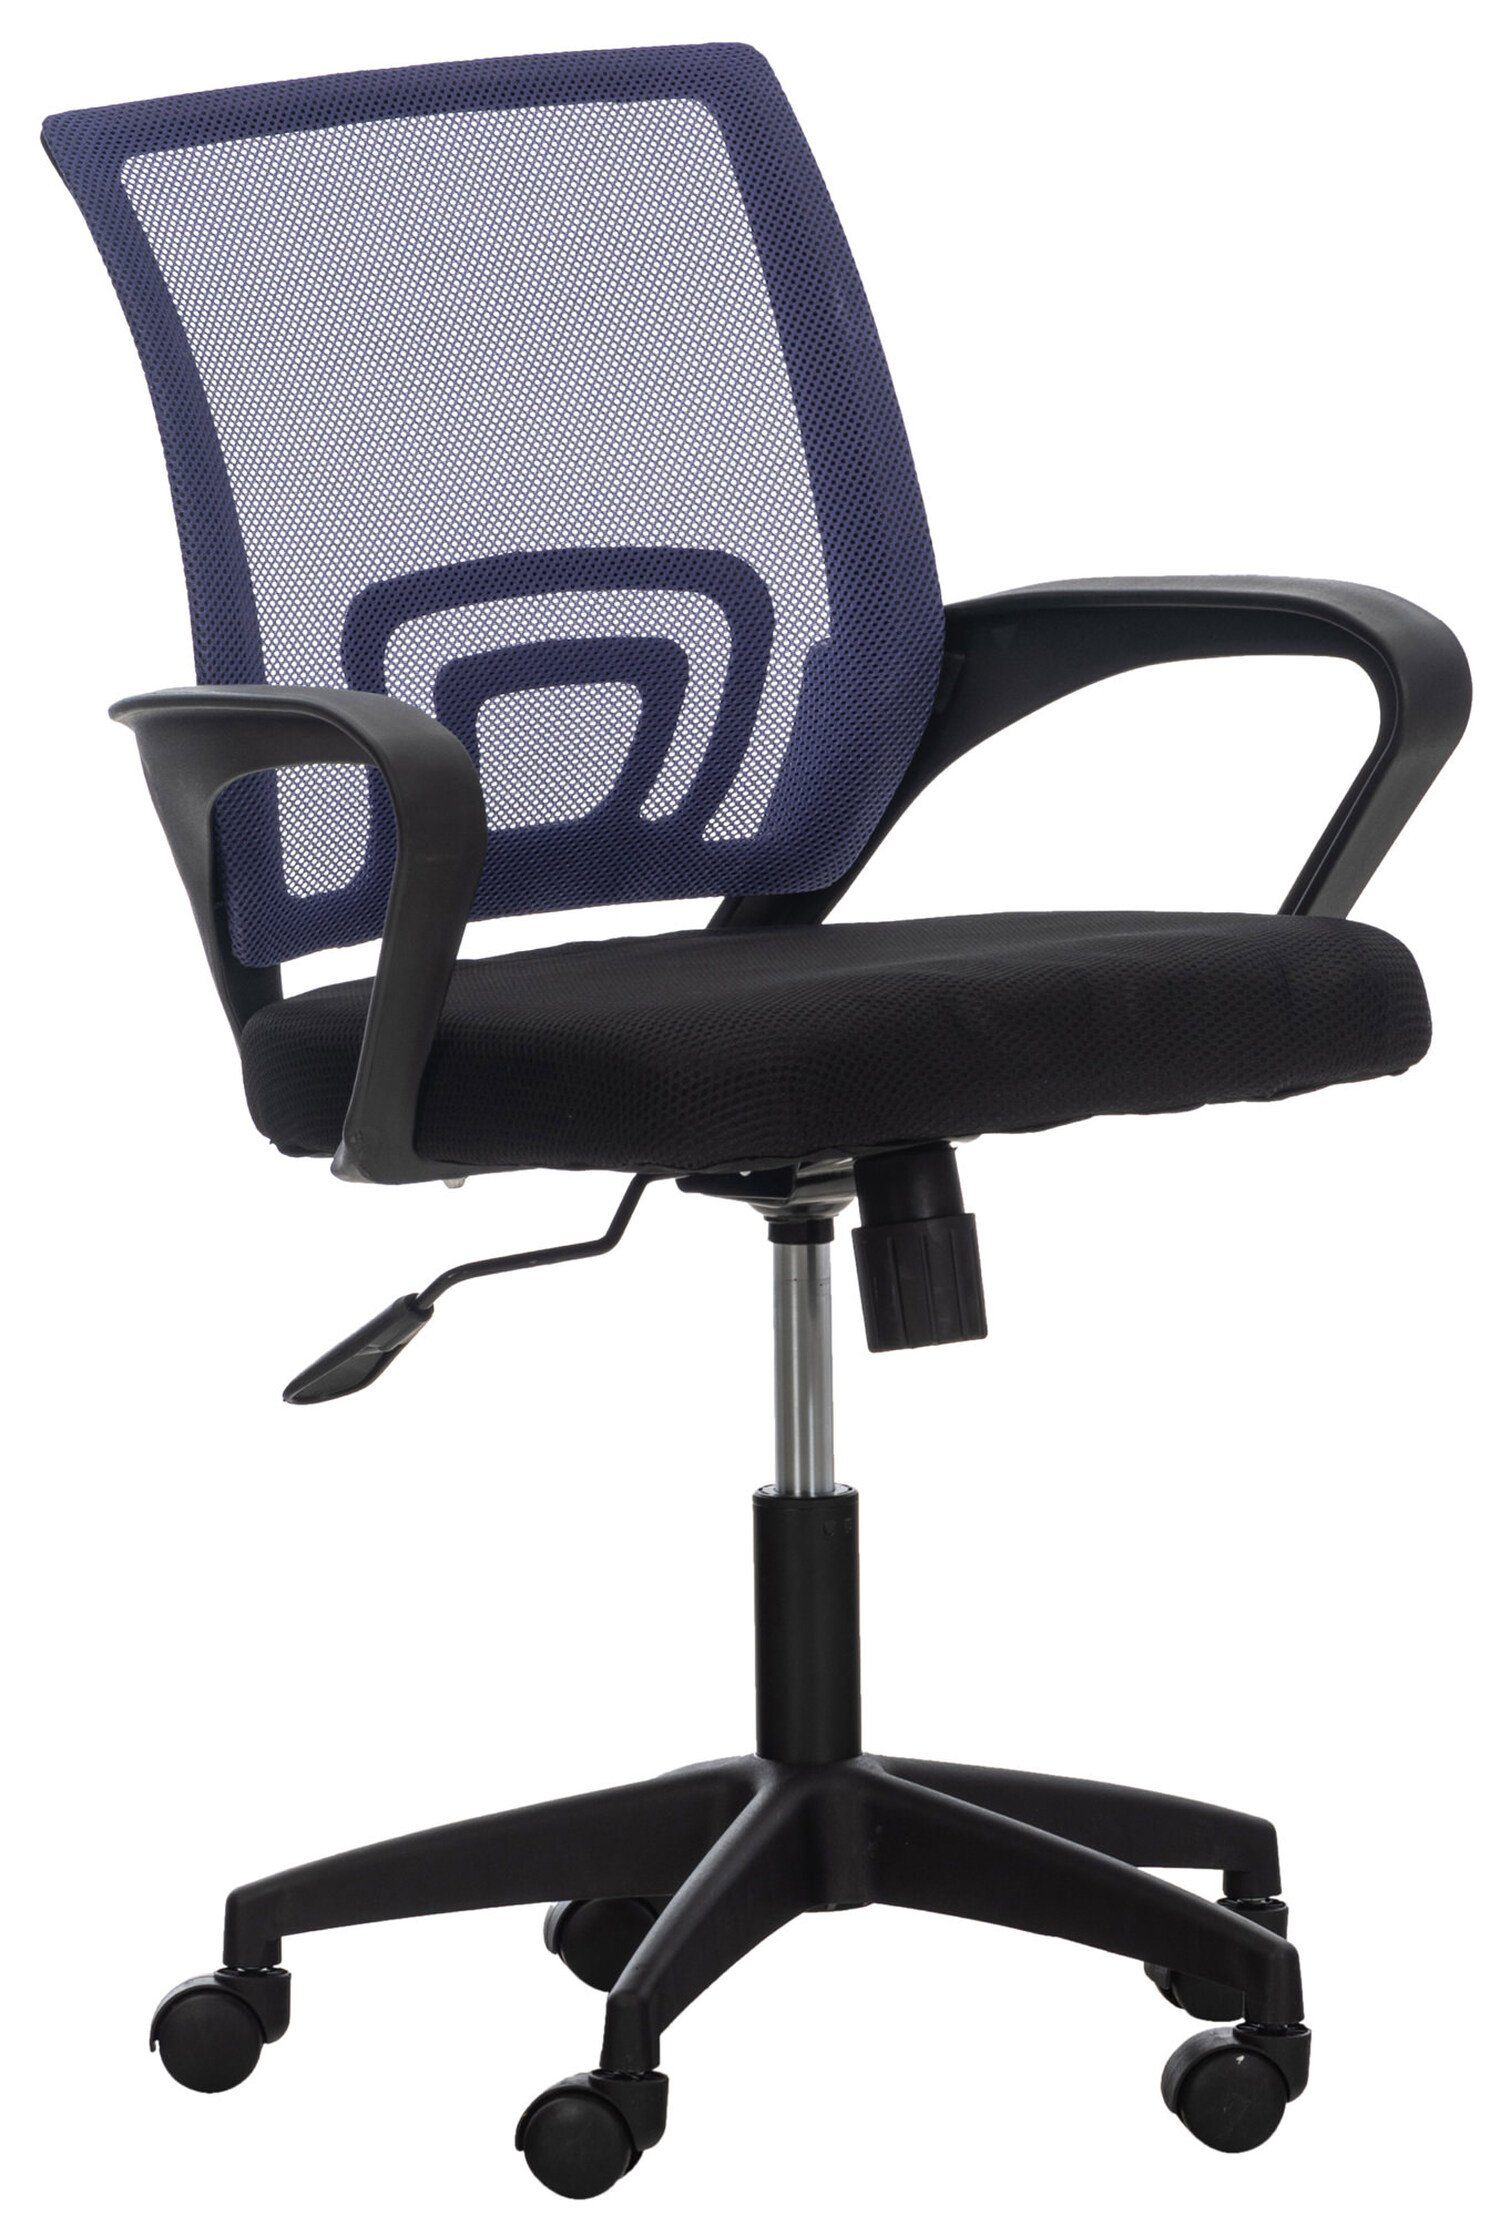 TPFLiving Bürostuhl Audrey mit bequemer ergonomisch geformter Rückenlehne (Schreibtischstuhl, Drehstuhl, Chefsessel, Bürostuhl XXL), Gestell: Kunststoff schwarz - Sitzfläche: Netzbezug lila